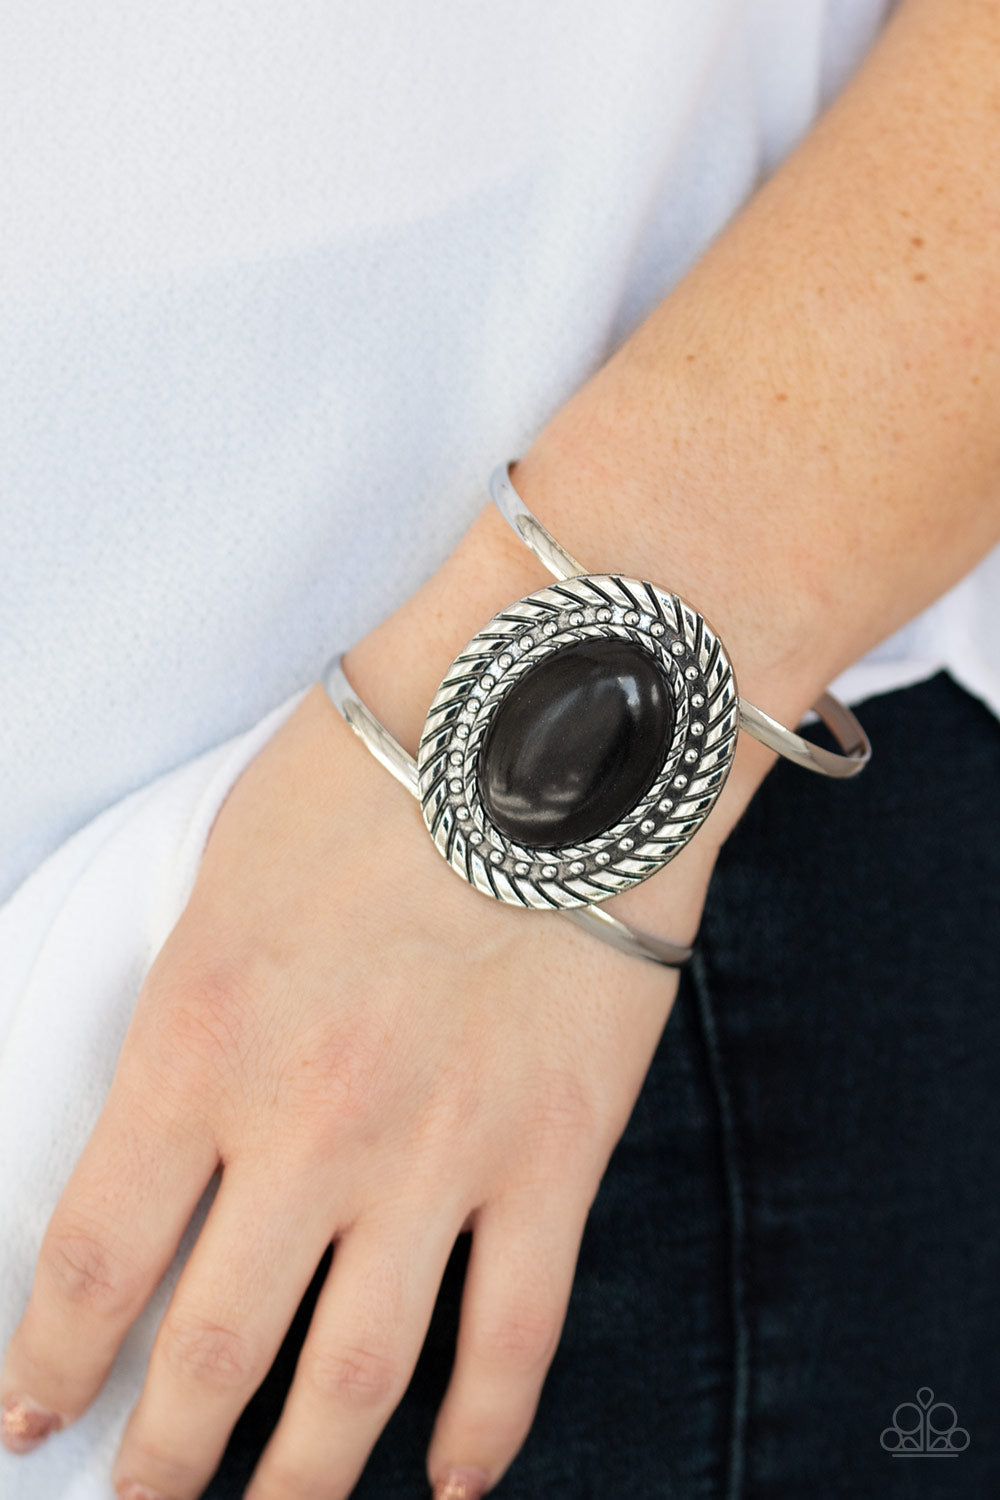 Paparazzi Desert Aura - Black Stone - Silver Cuff Bracelet - $5 Jewelry with Ashley Swint